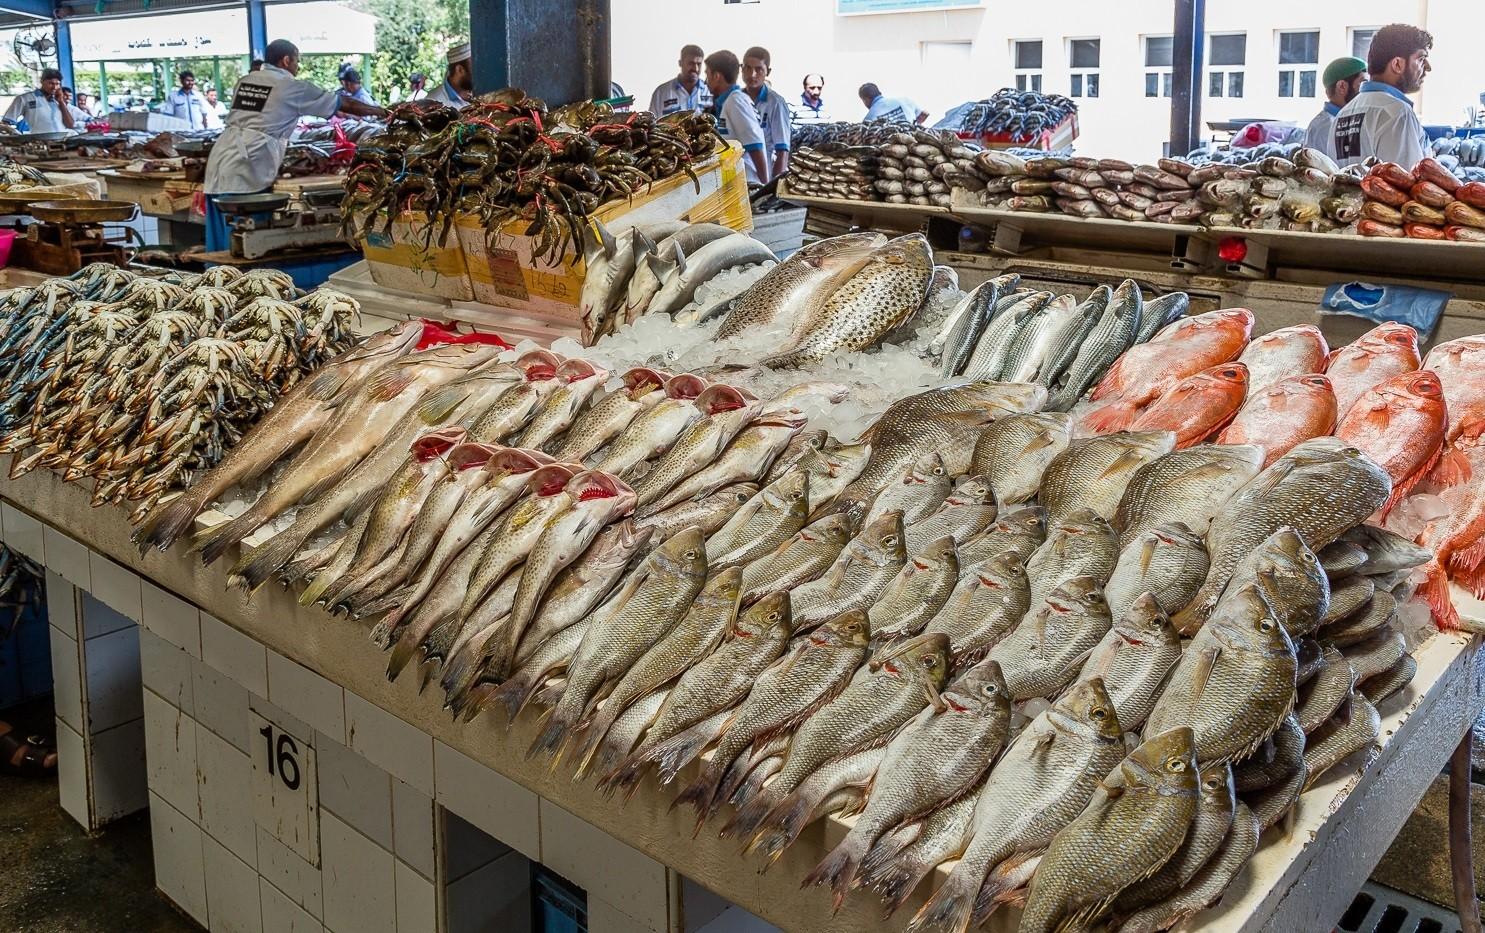 ارتفاع التكلفة الإنتاجية وتدنى الأسعار يعرضان مزارع الأسماك للخسائر